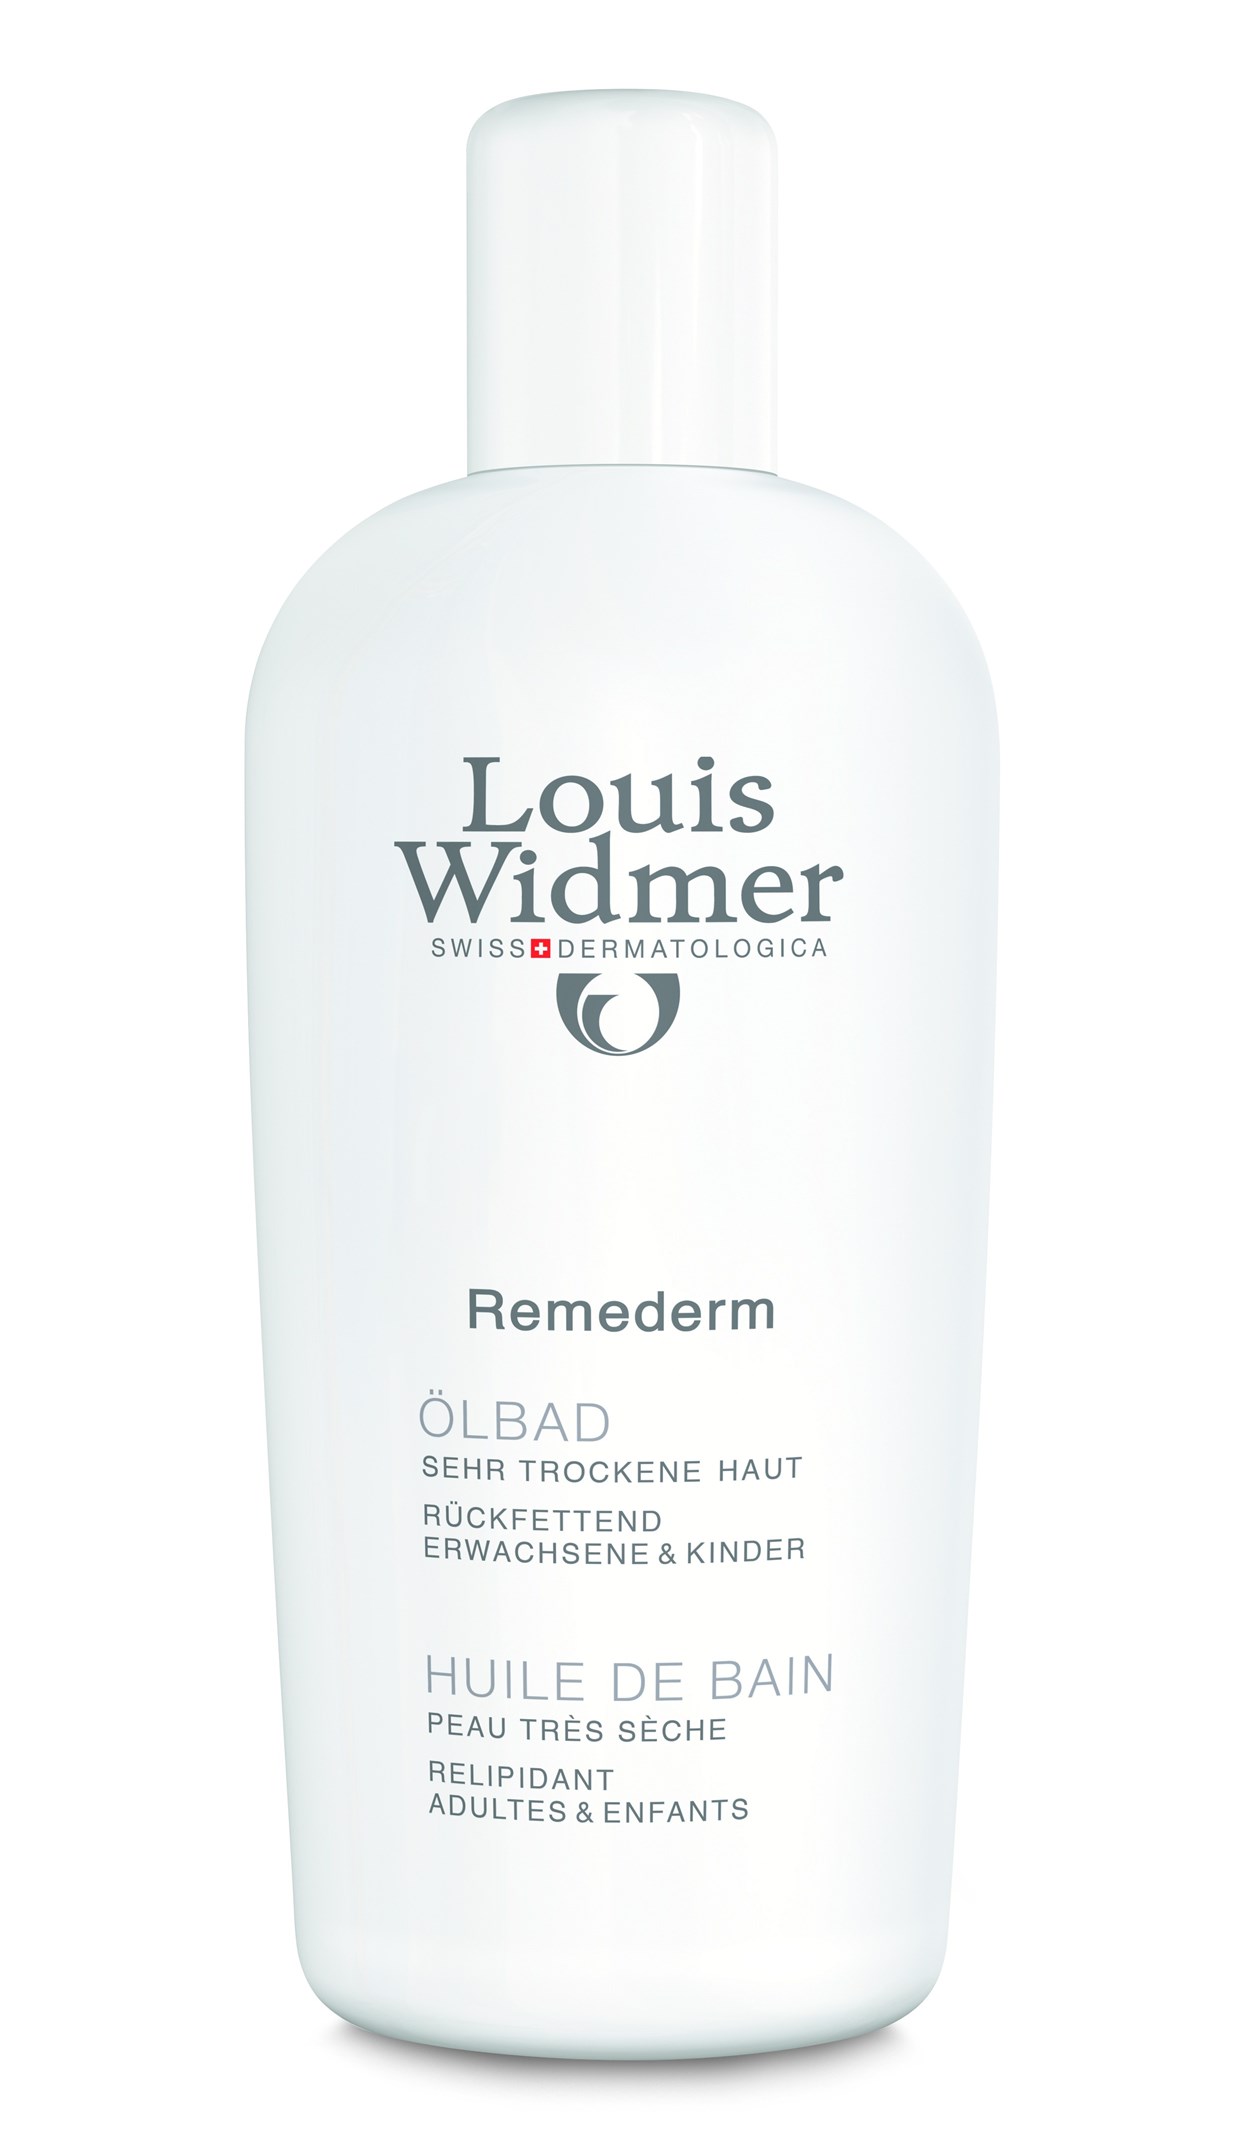 Louis Widmer Remederm Oil Bath P